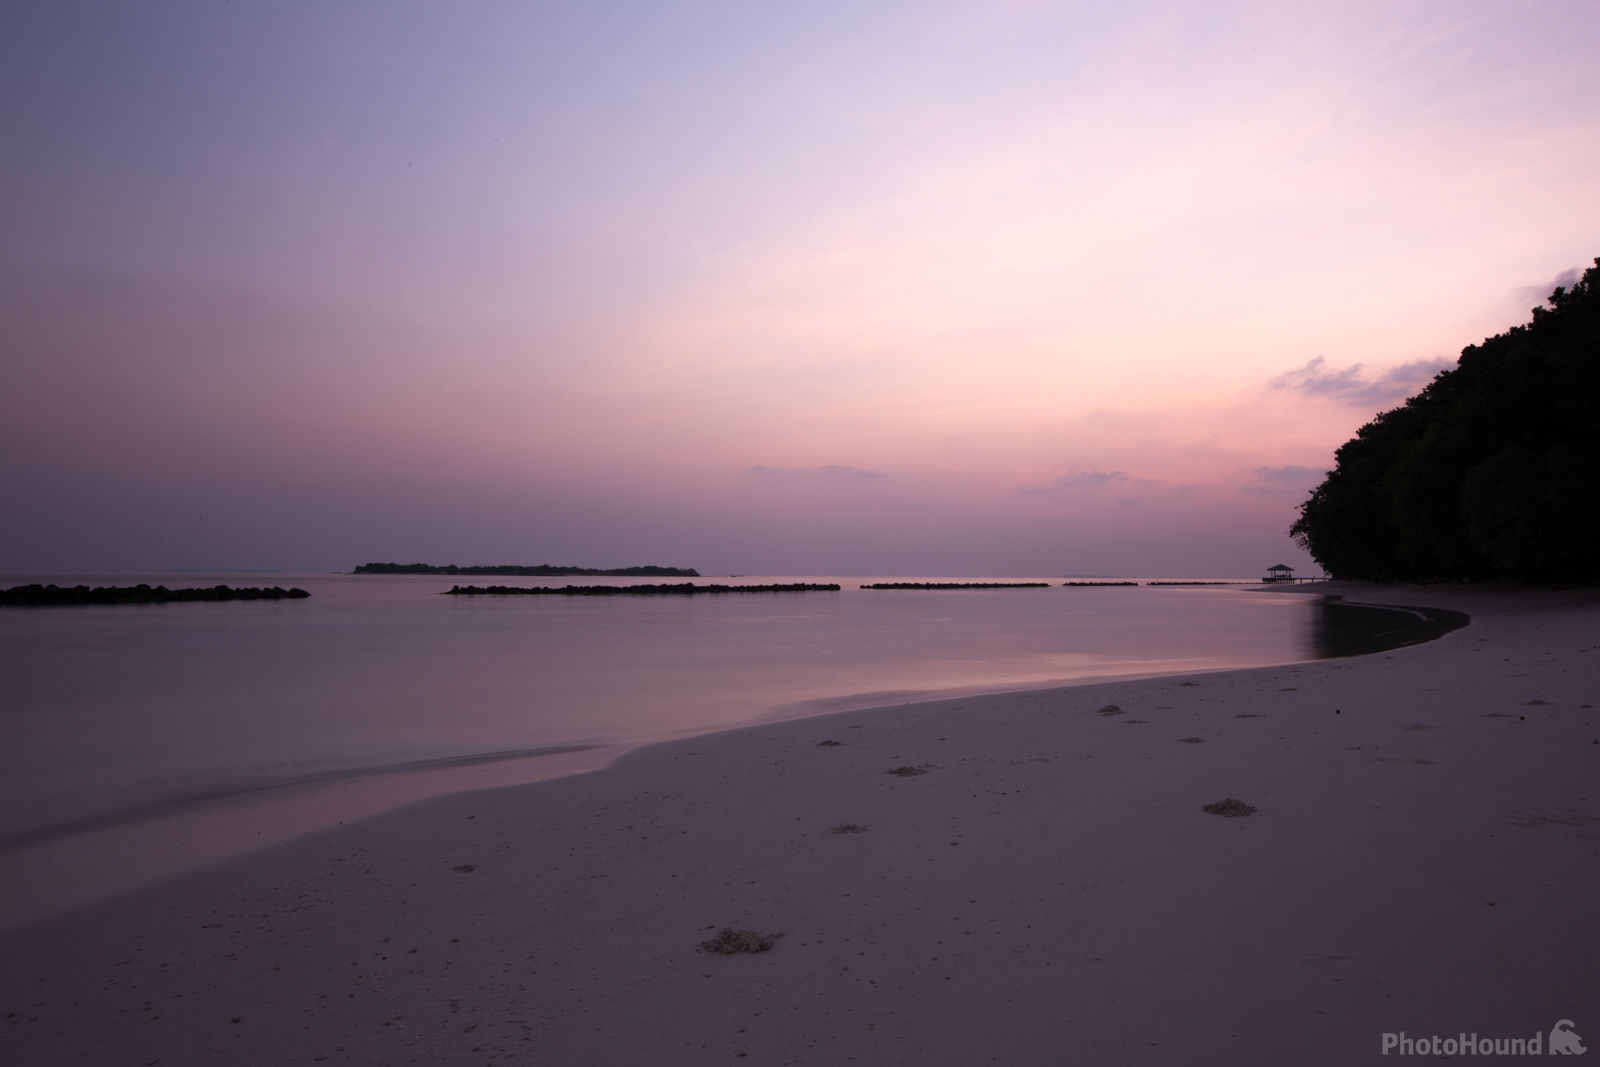 Image of Royal Island, Maldives by Saša Jamšek